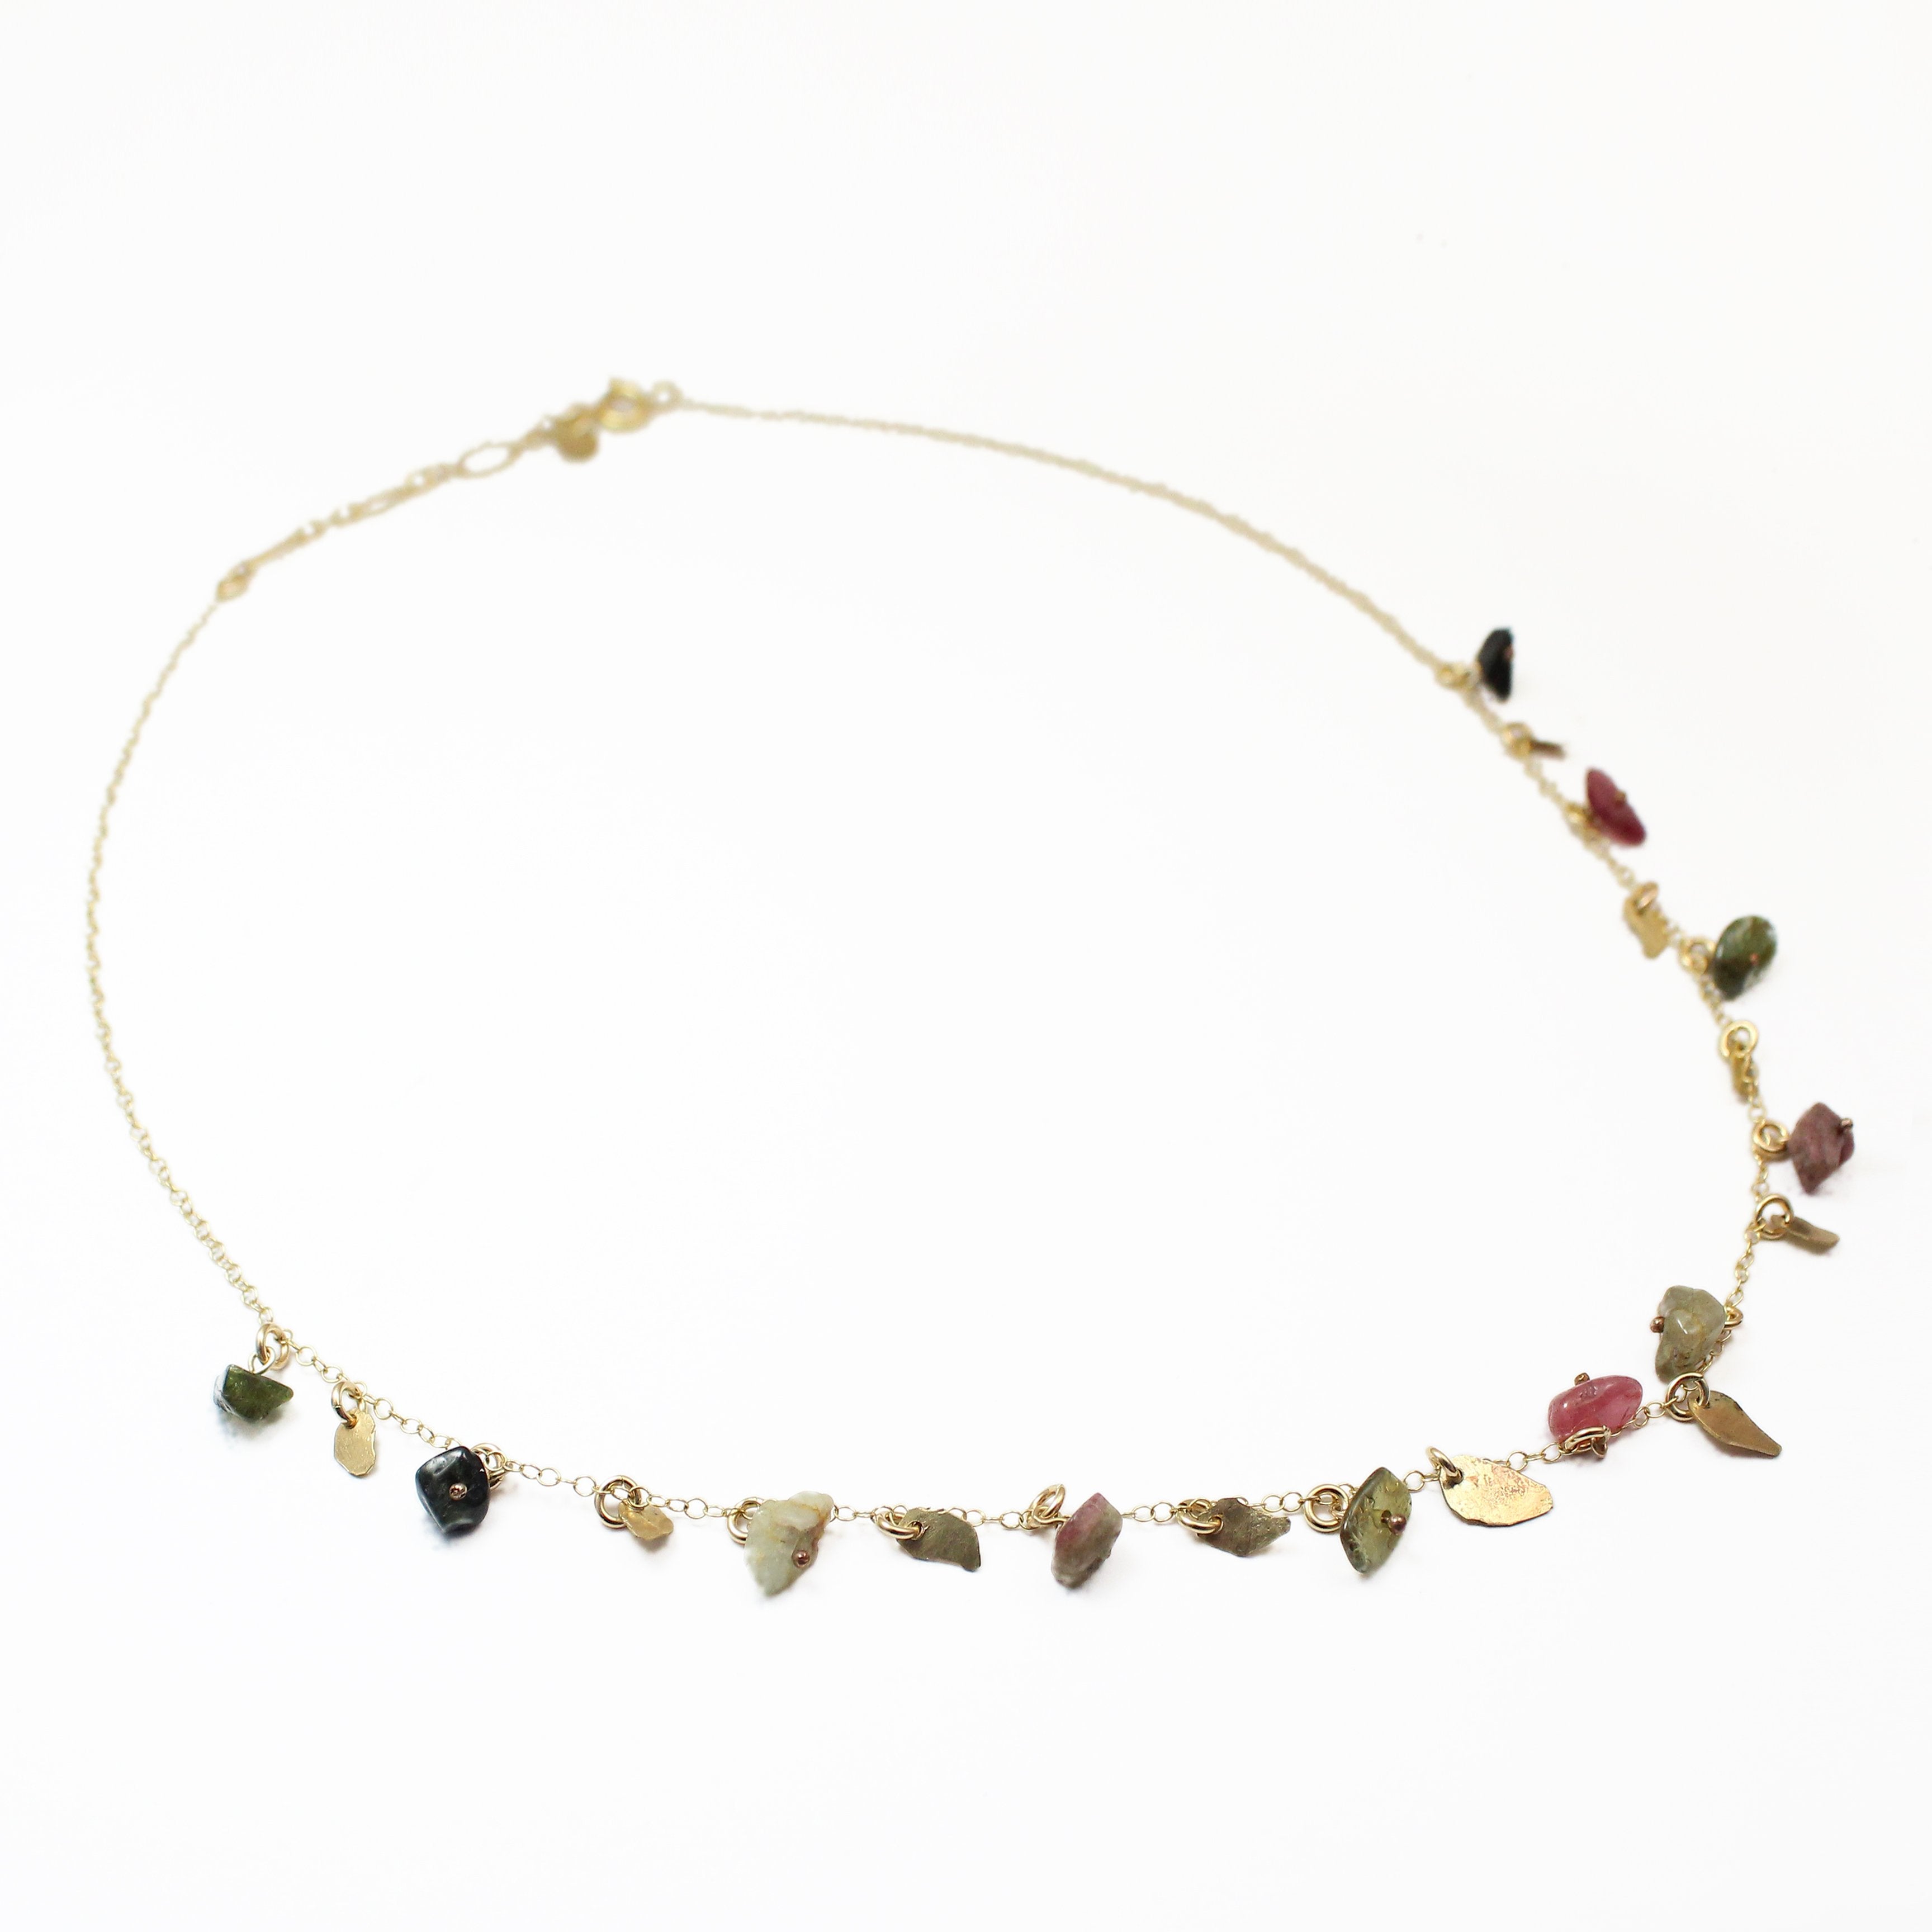 Gold filled Leaves & Tourmaline Gemstones Elegant Necklace - Shulamit Kanter